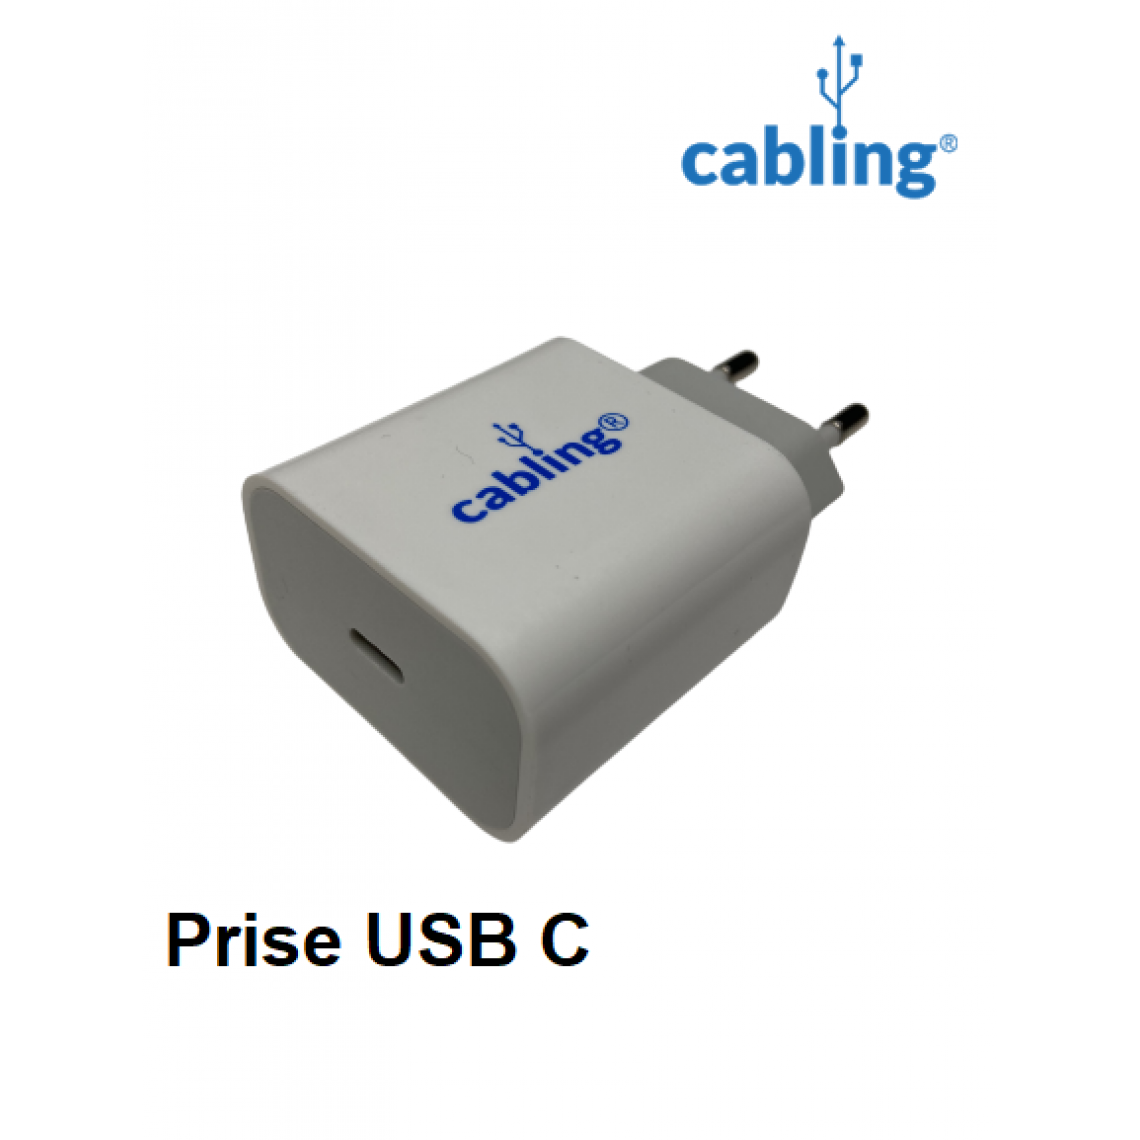 Cabling - CABLING® Chargeur Adaptateur Secteur USB C 20W Compatible pour iPhone 12 / 12min / 12Pro / 12Pro Max, Chargeur PD Chargeur Rapide pour iPad Pro AirPods - Chargeur secteur téléphone